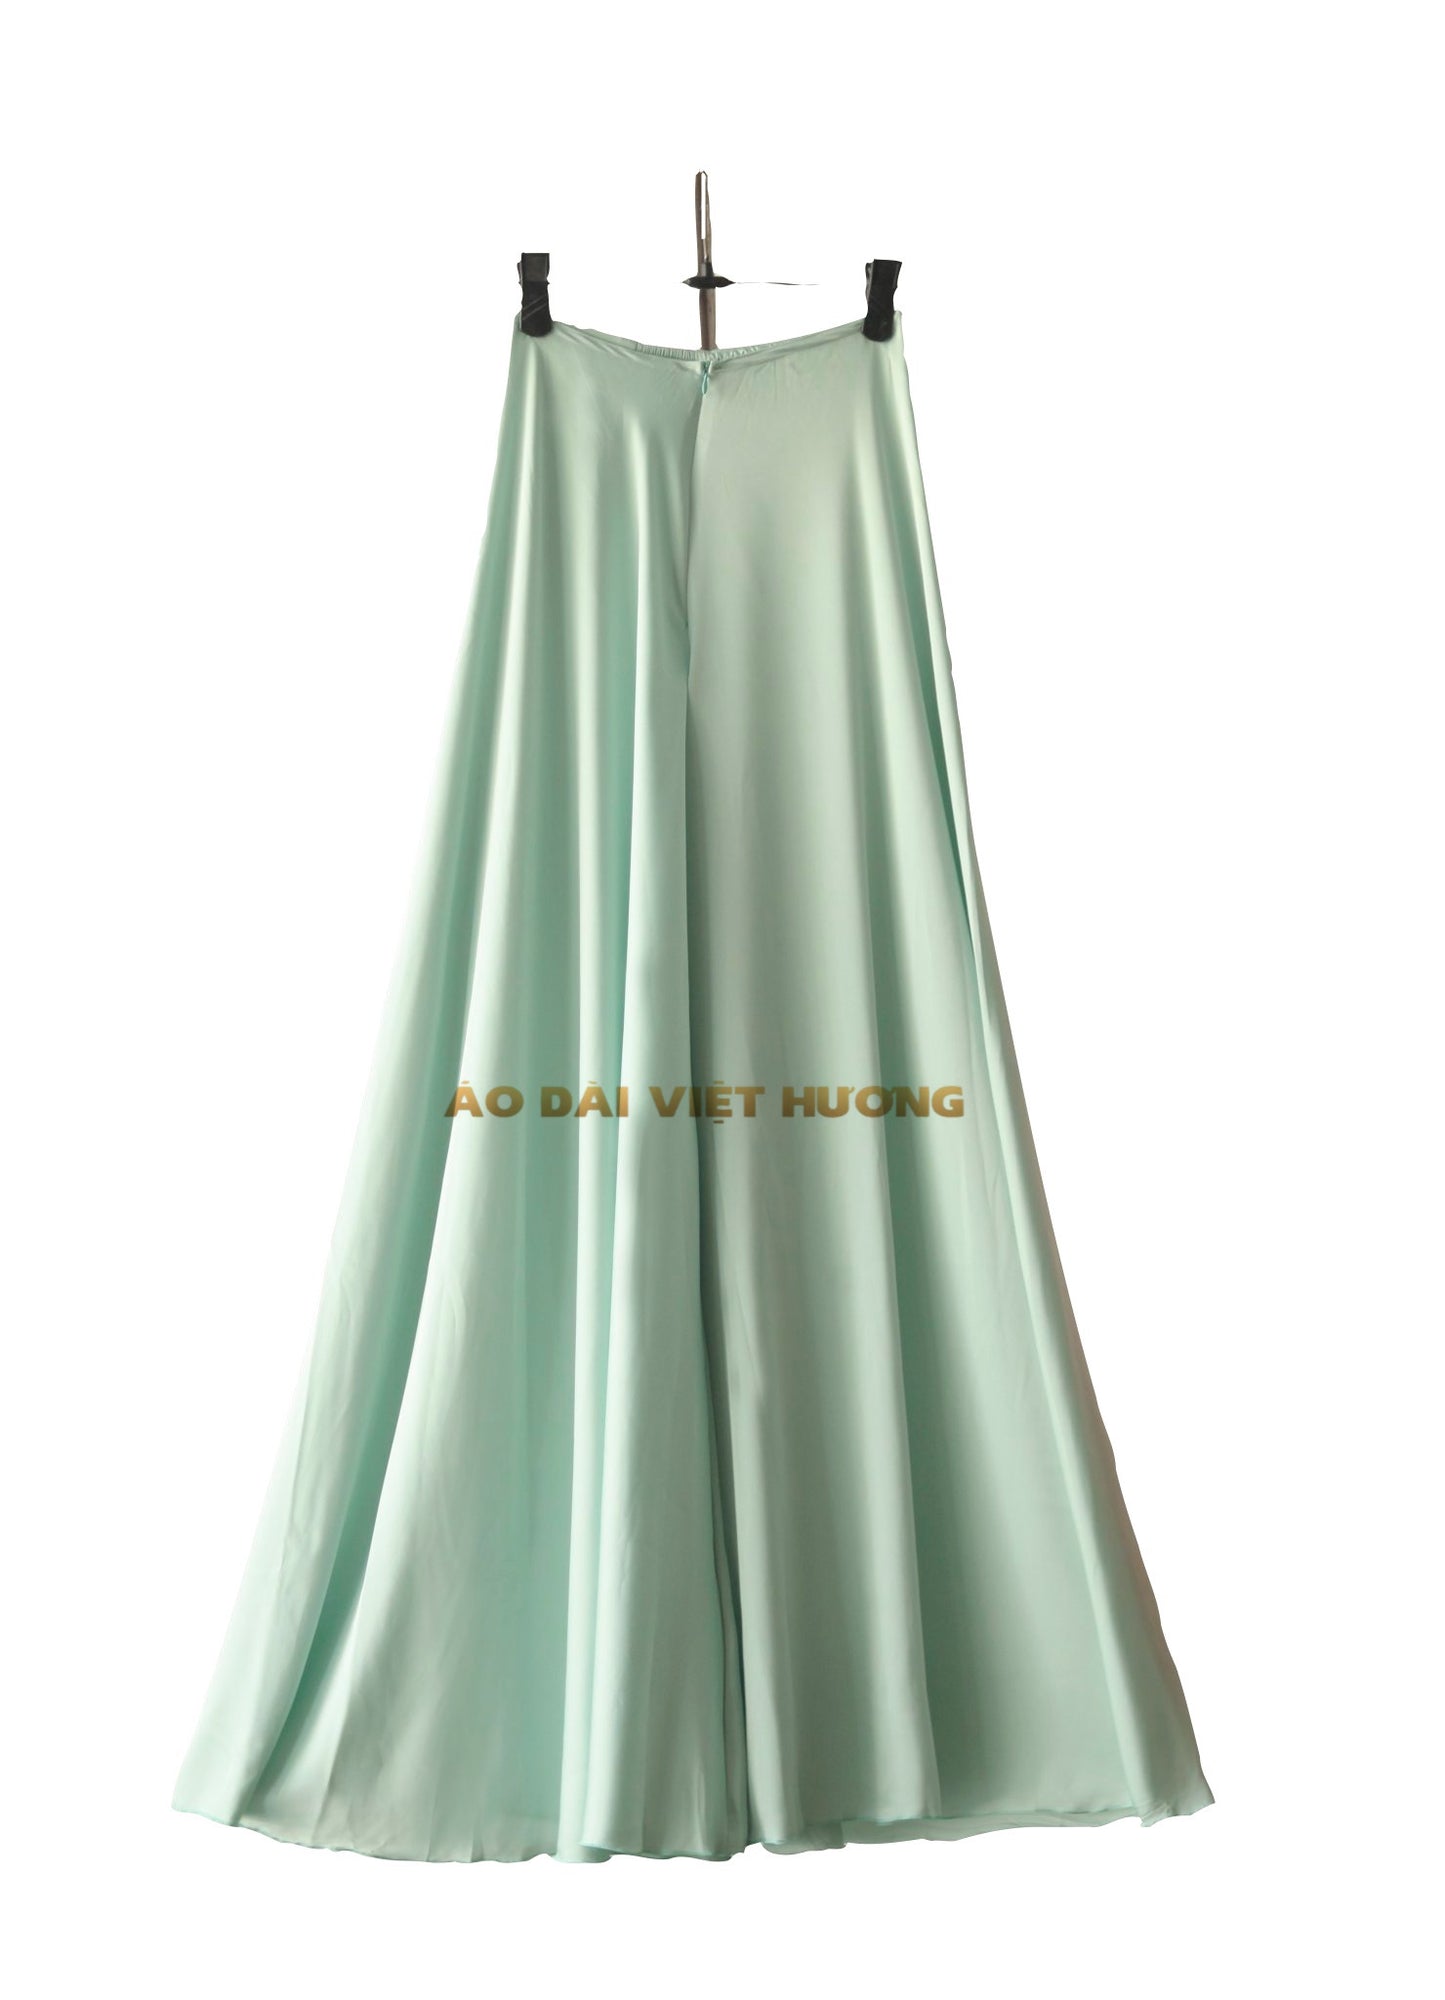 509 -  Light Turquoise Thái Tuấn Silk Skirt Pants (Quần Váy Ống Xéo Lụa Thái Tuấn Xanh Ngọc)